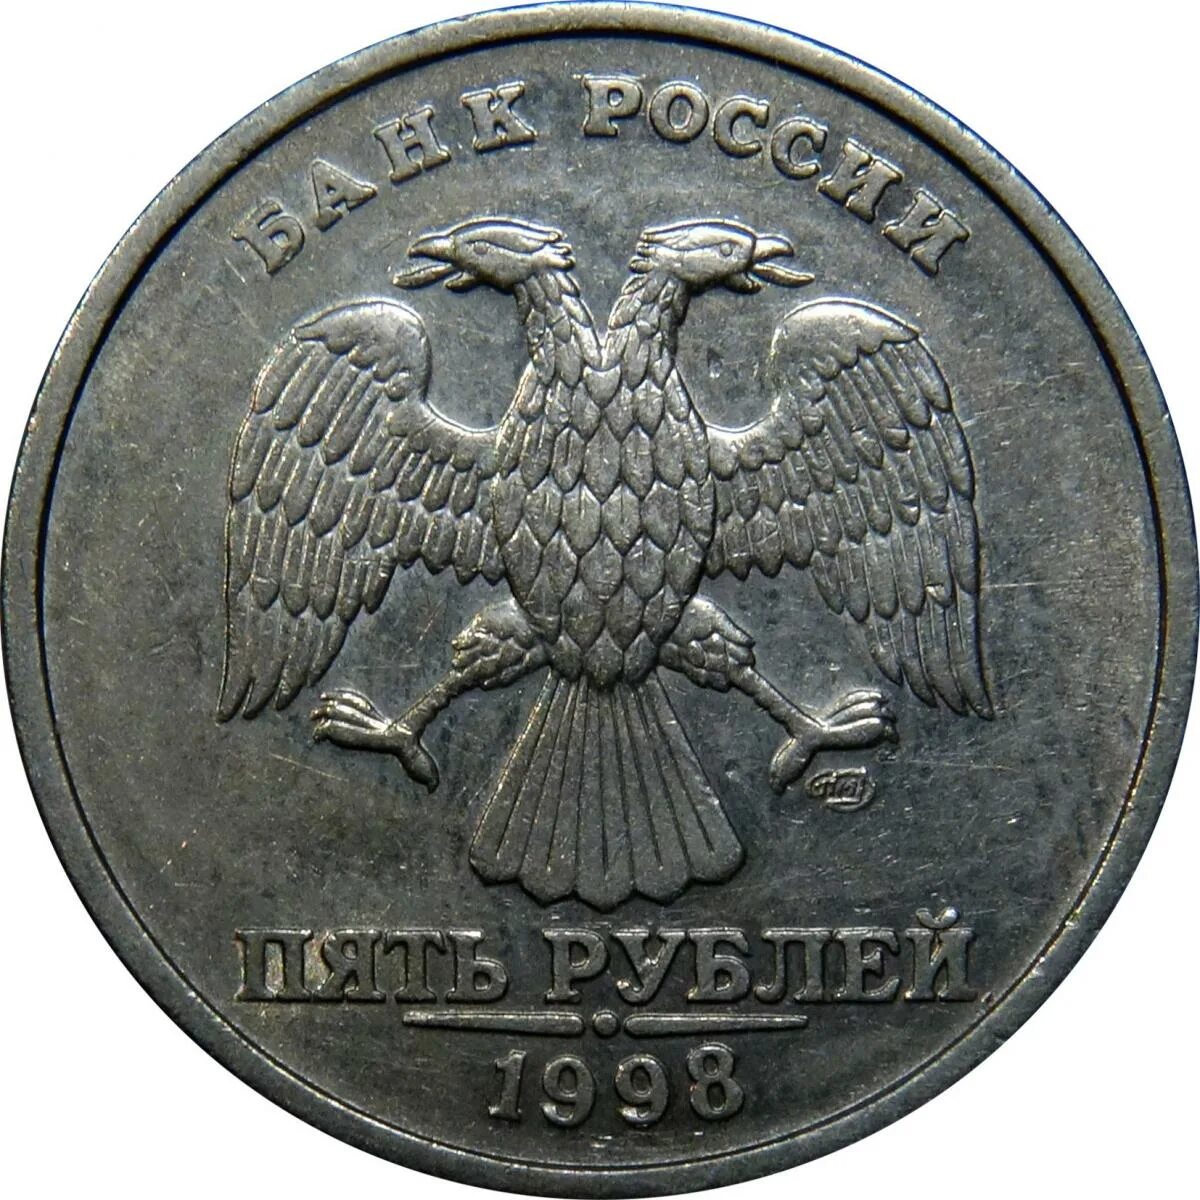 2 Рубля 1998 года. 2 Рубля СПМД 98 год. Два рубля СПМД 1998. Редкие монеты 2 рубля 1998.